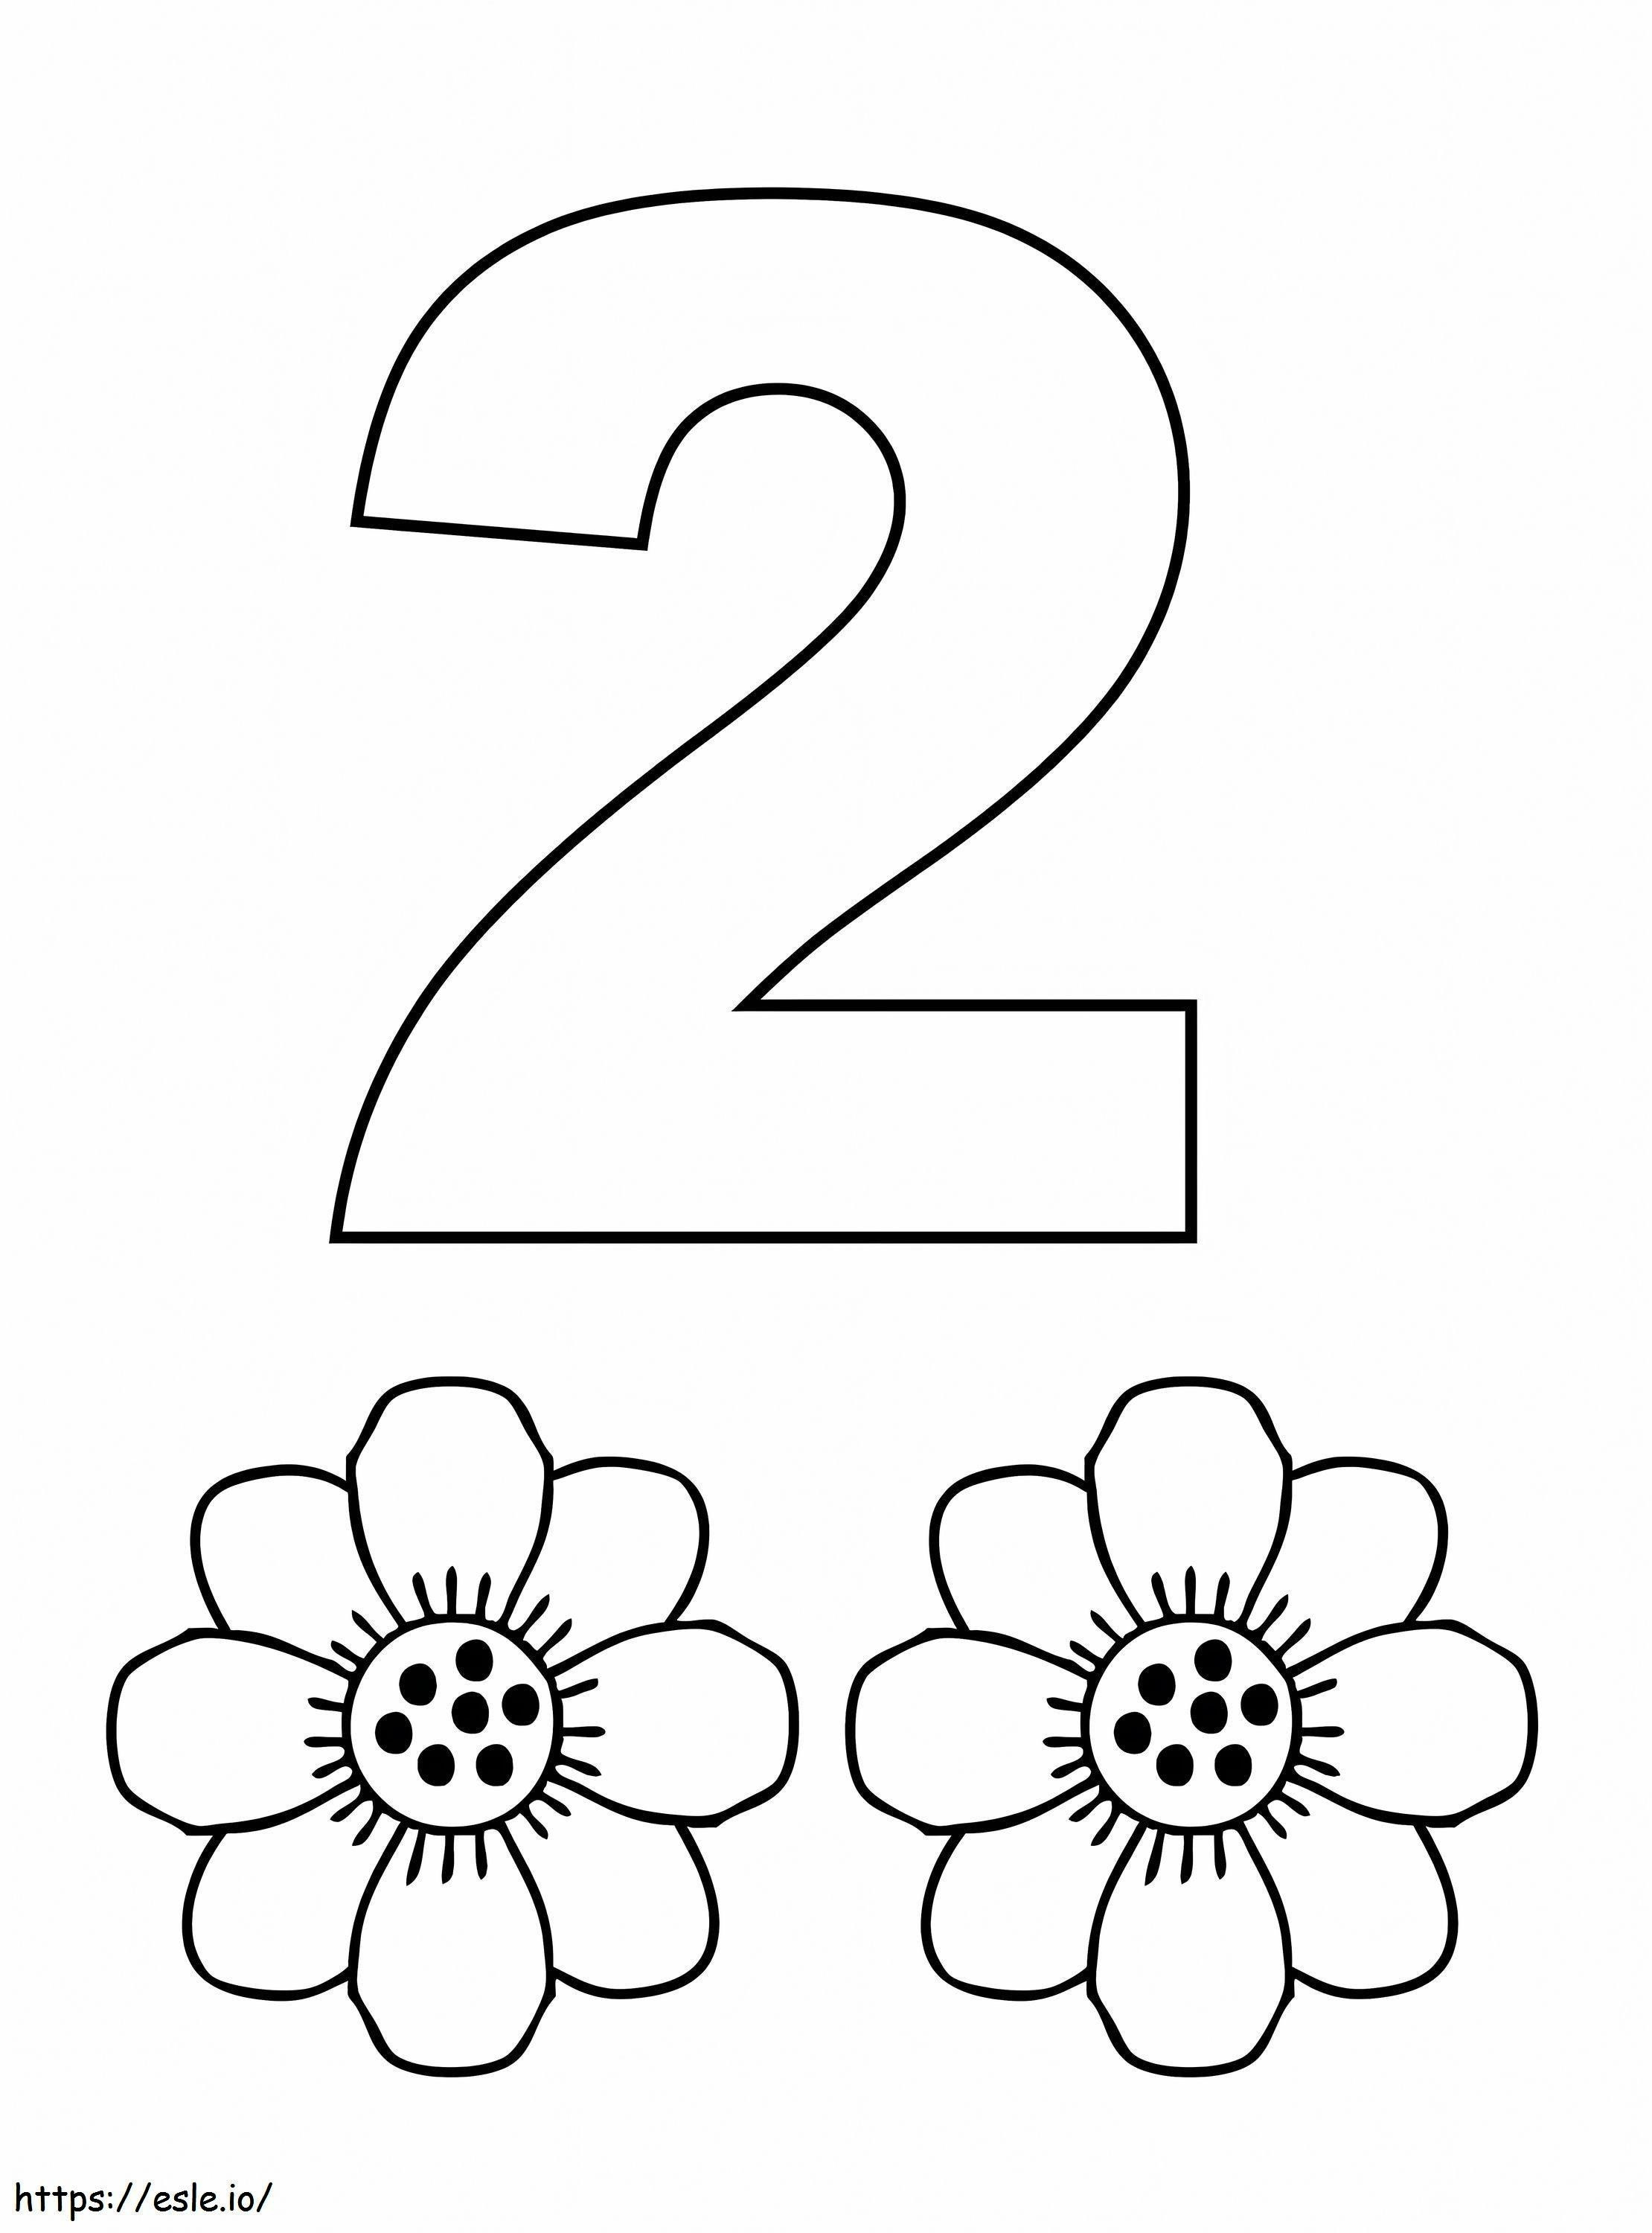 Numărul 2 și două flori de colorat